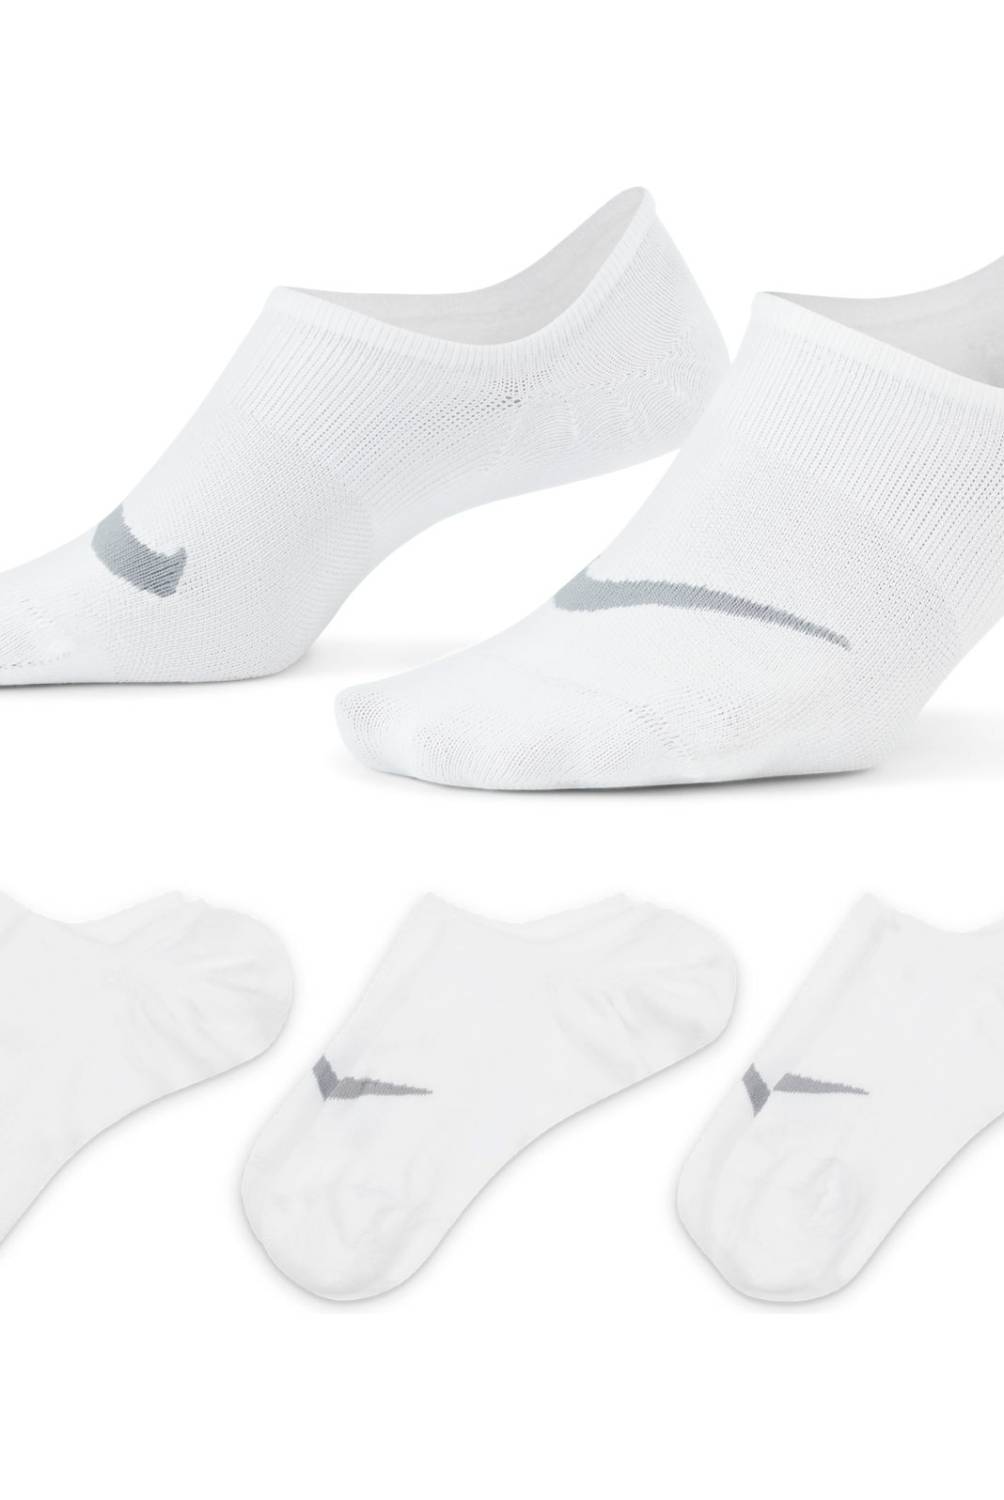 Pack de 2 calcetines bajos invisibles blancos Light Coton para mujer